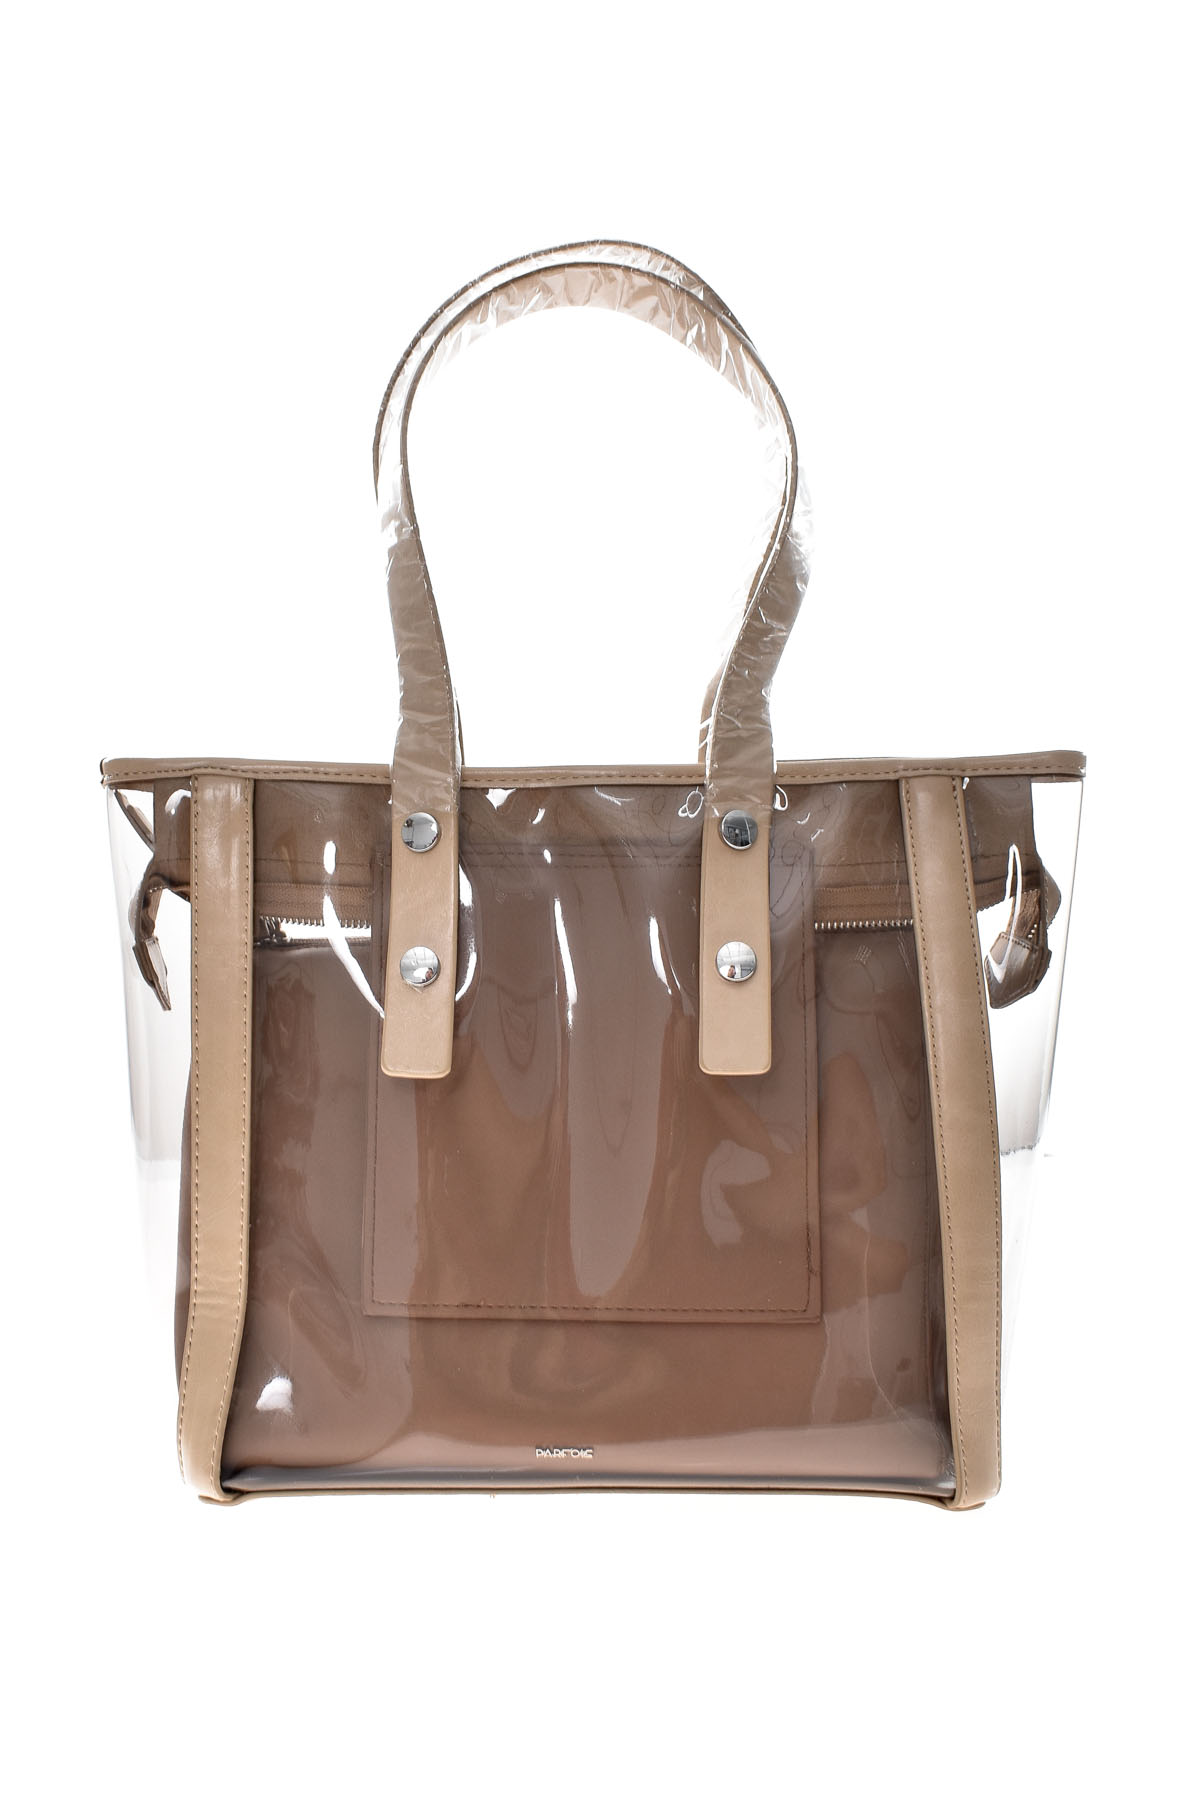 Women's bag - PARFOIS - 2